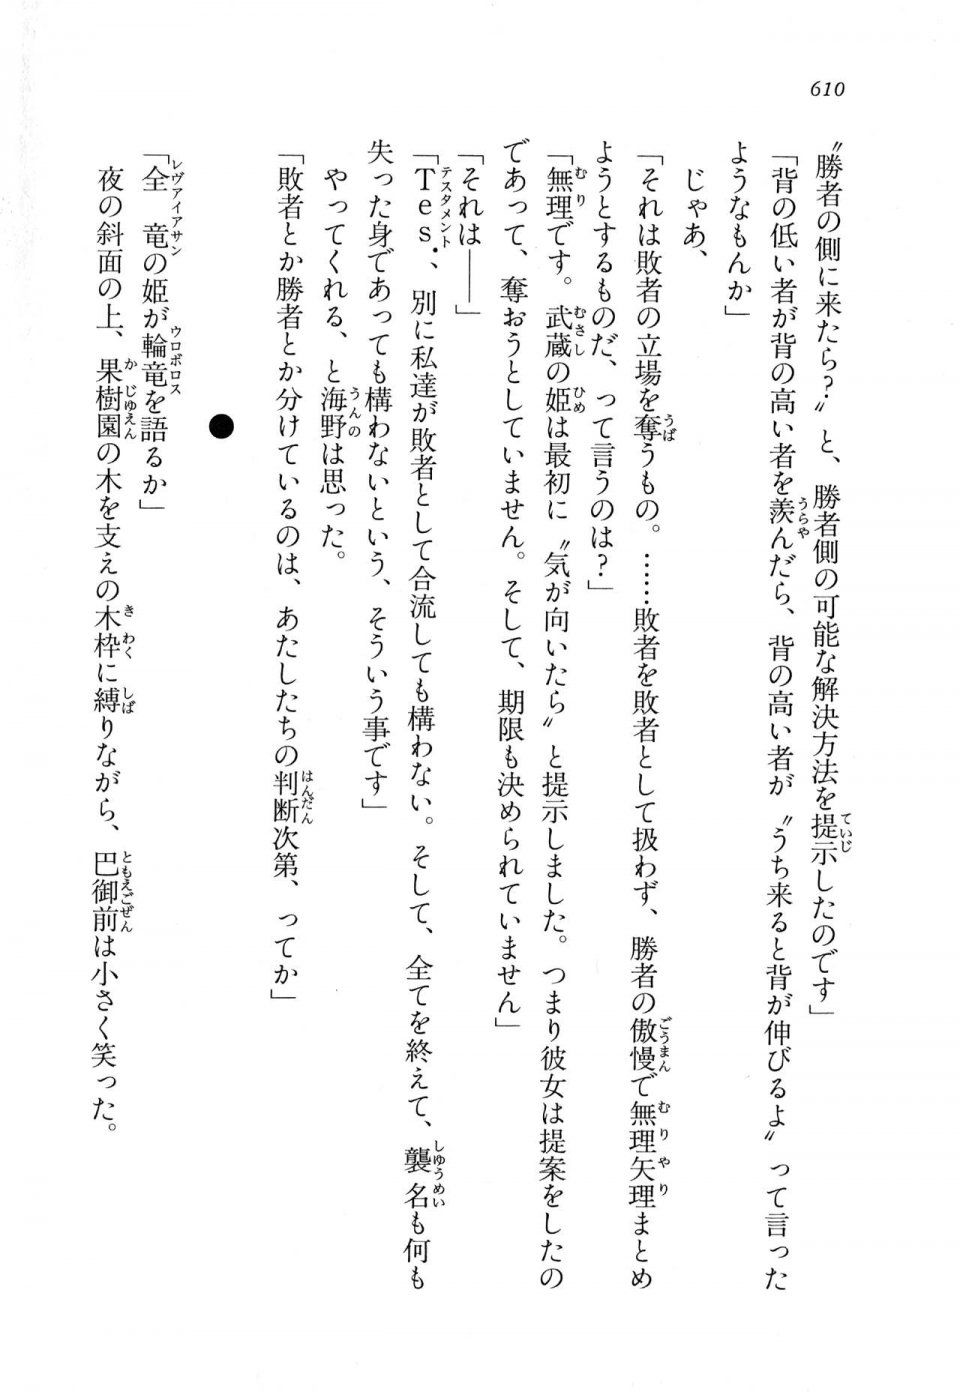 Kyoukai Senjou no Horizon LN Vol 11(5A) - Photo #610